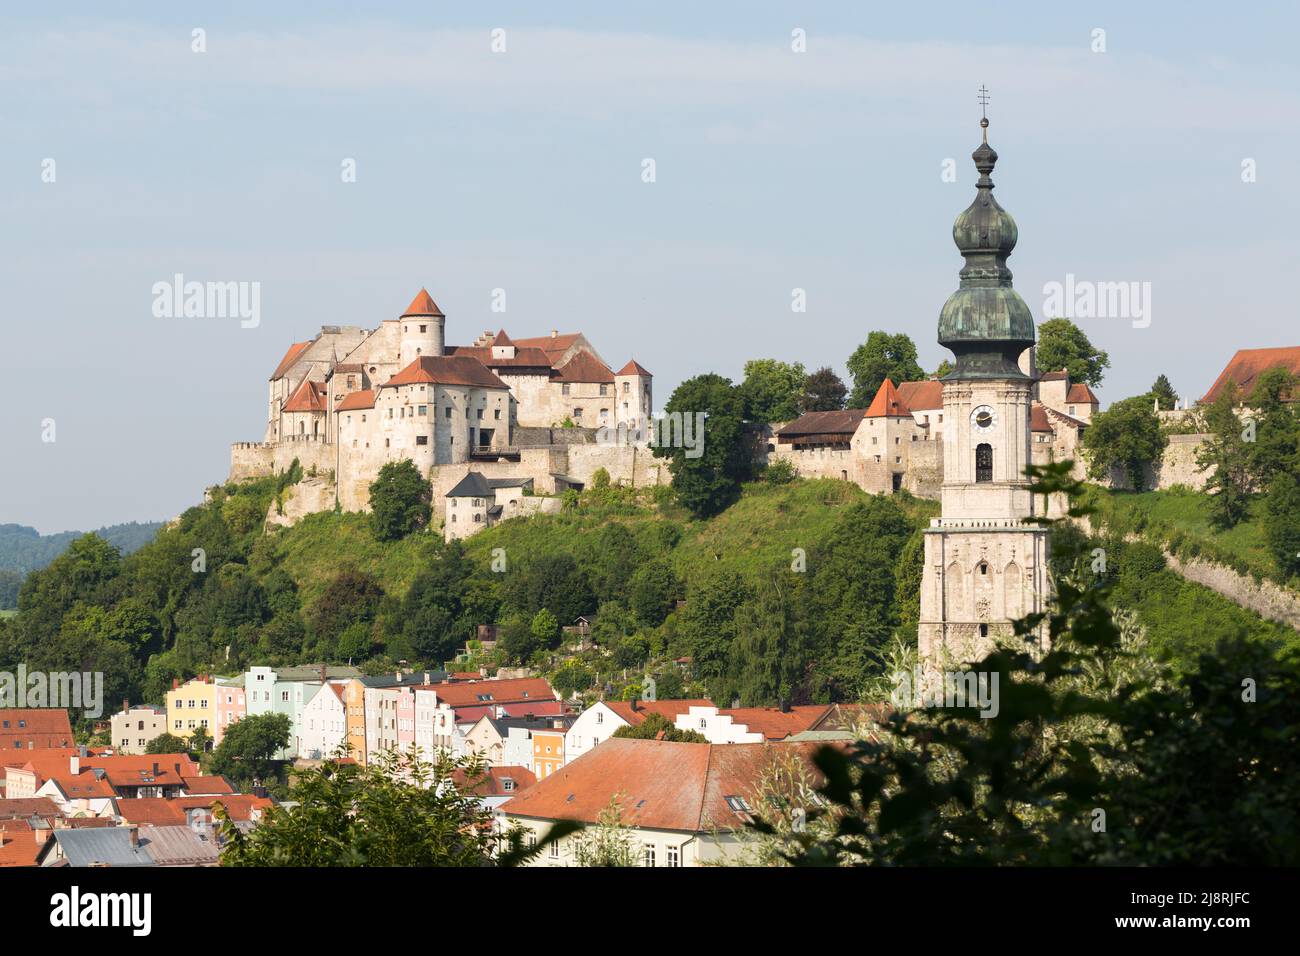 Burghausen, Germania - 24 luglio 2021: Castello principale di Burghausen e campanile della chiesa di San Jakob. Foto Stock